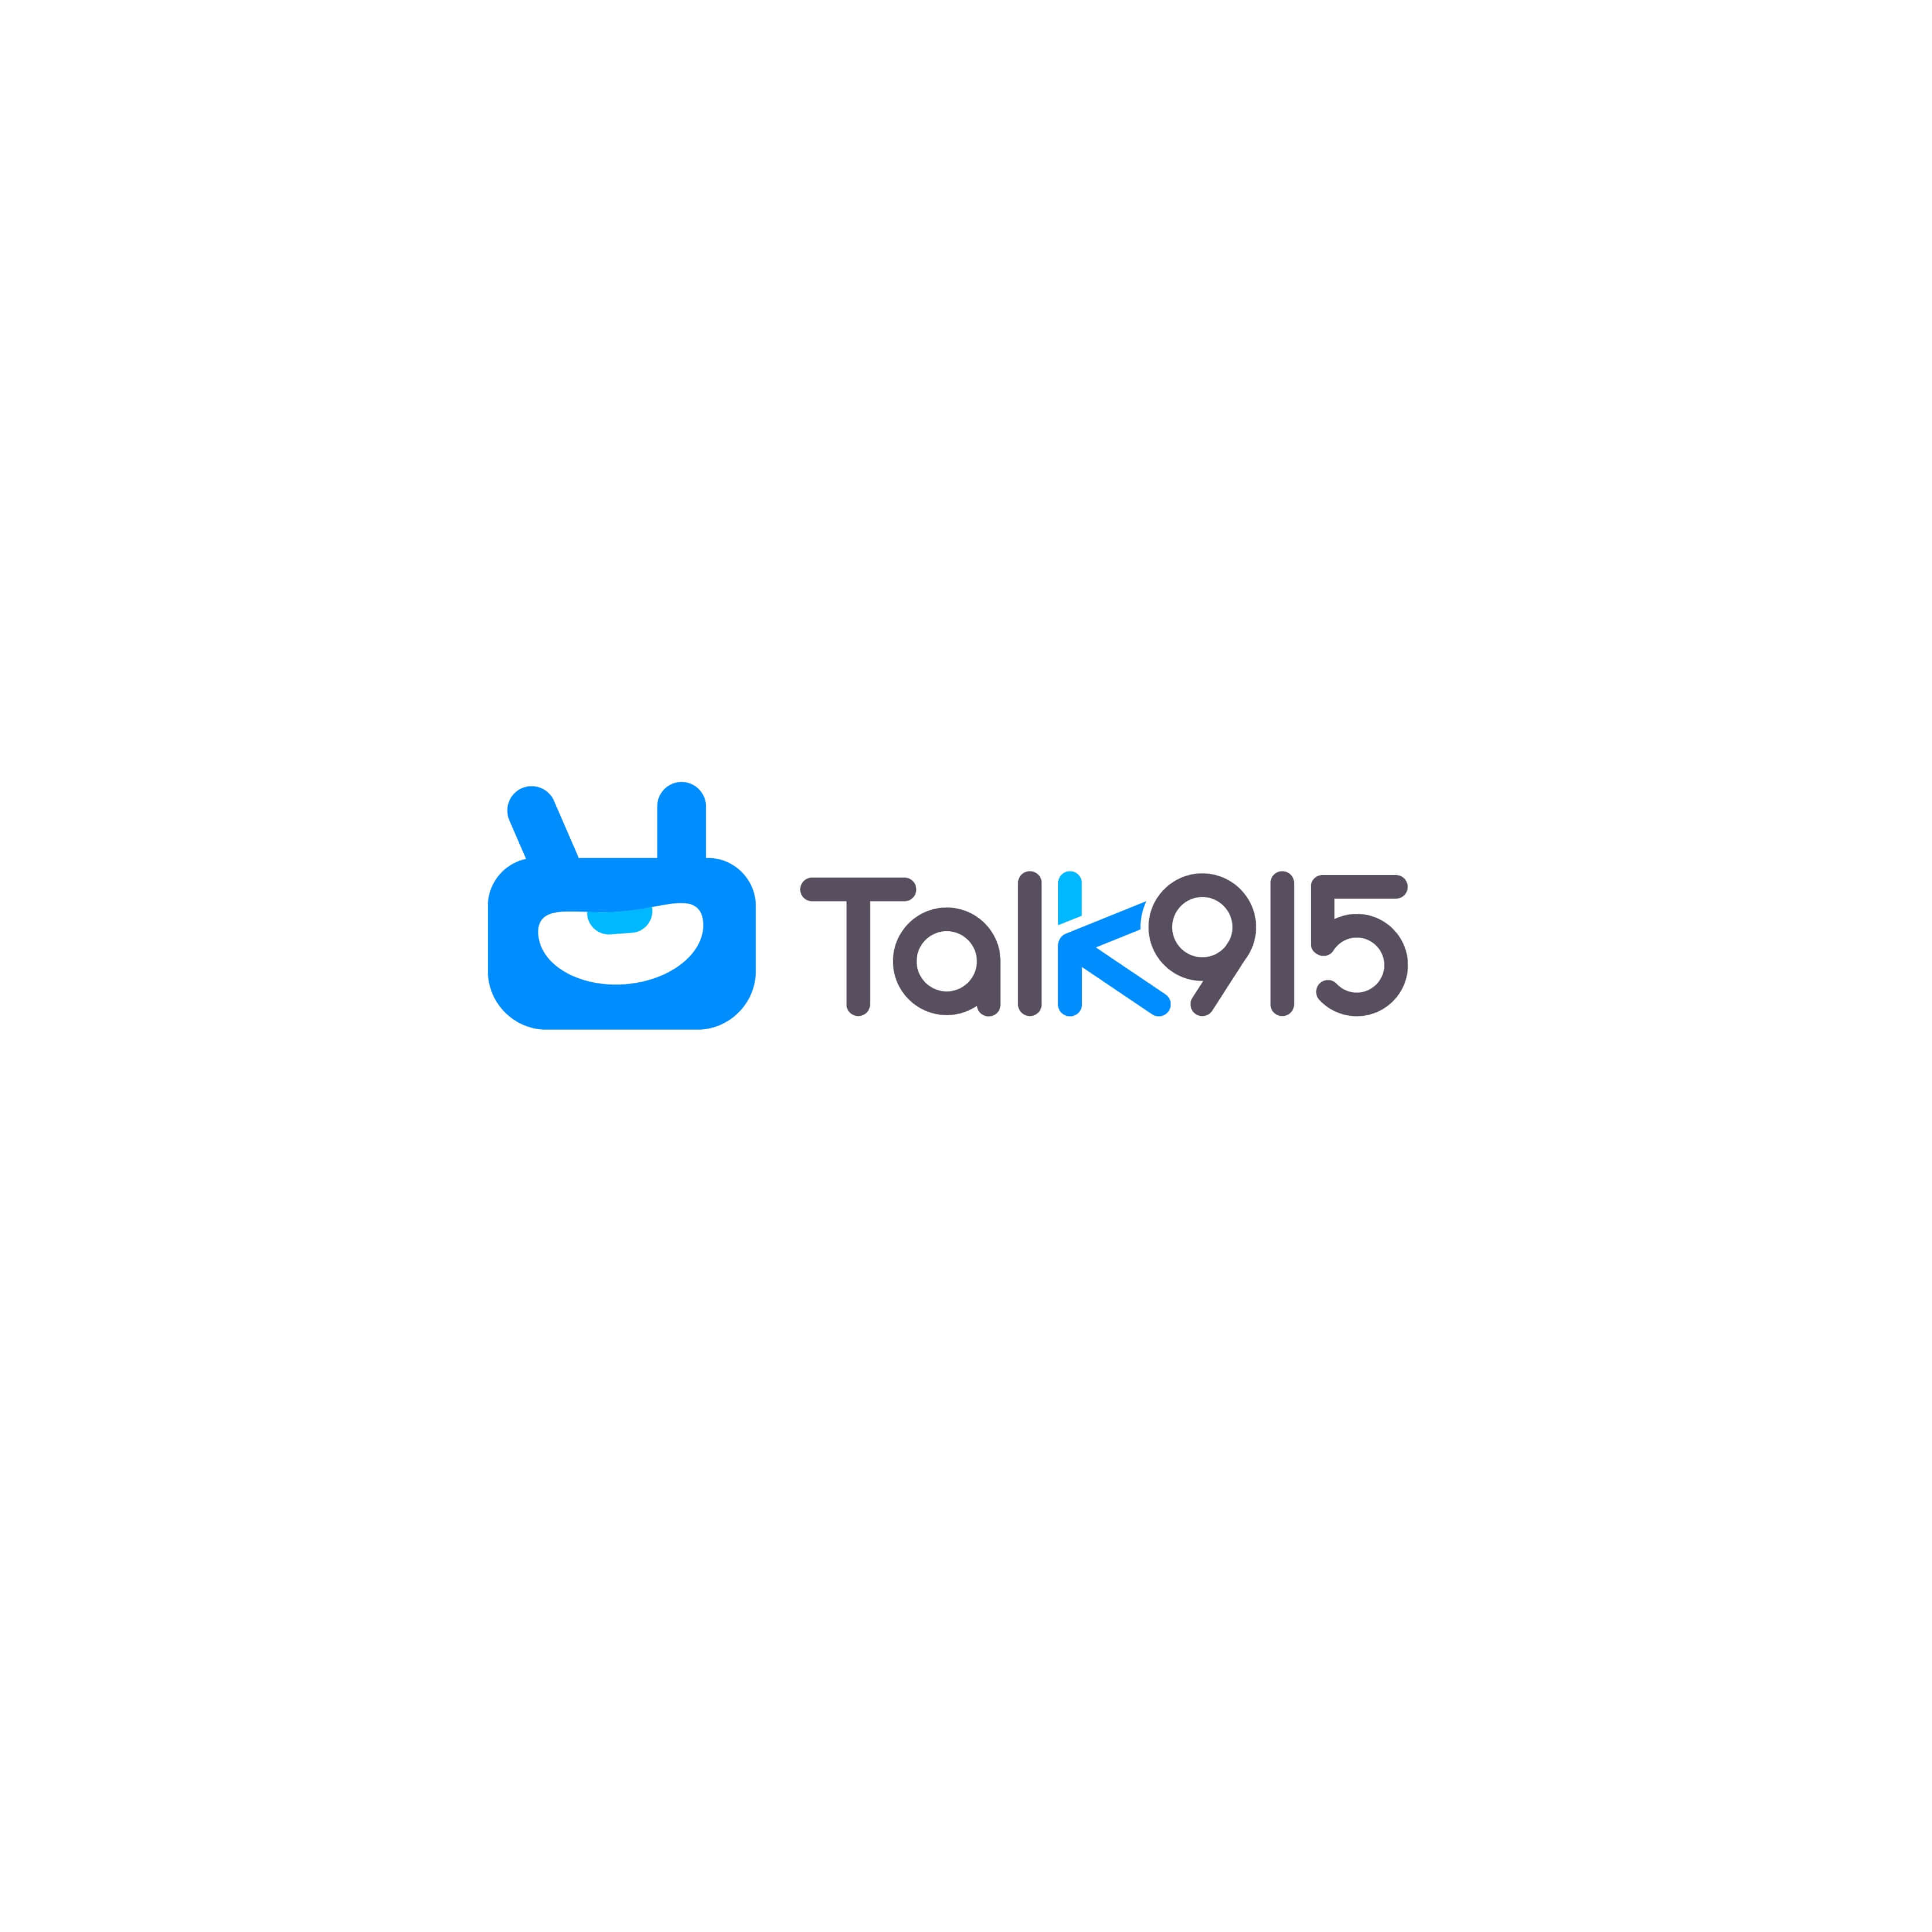 Talk915 - TeacherRecord